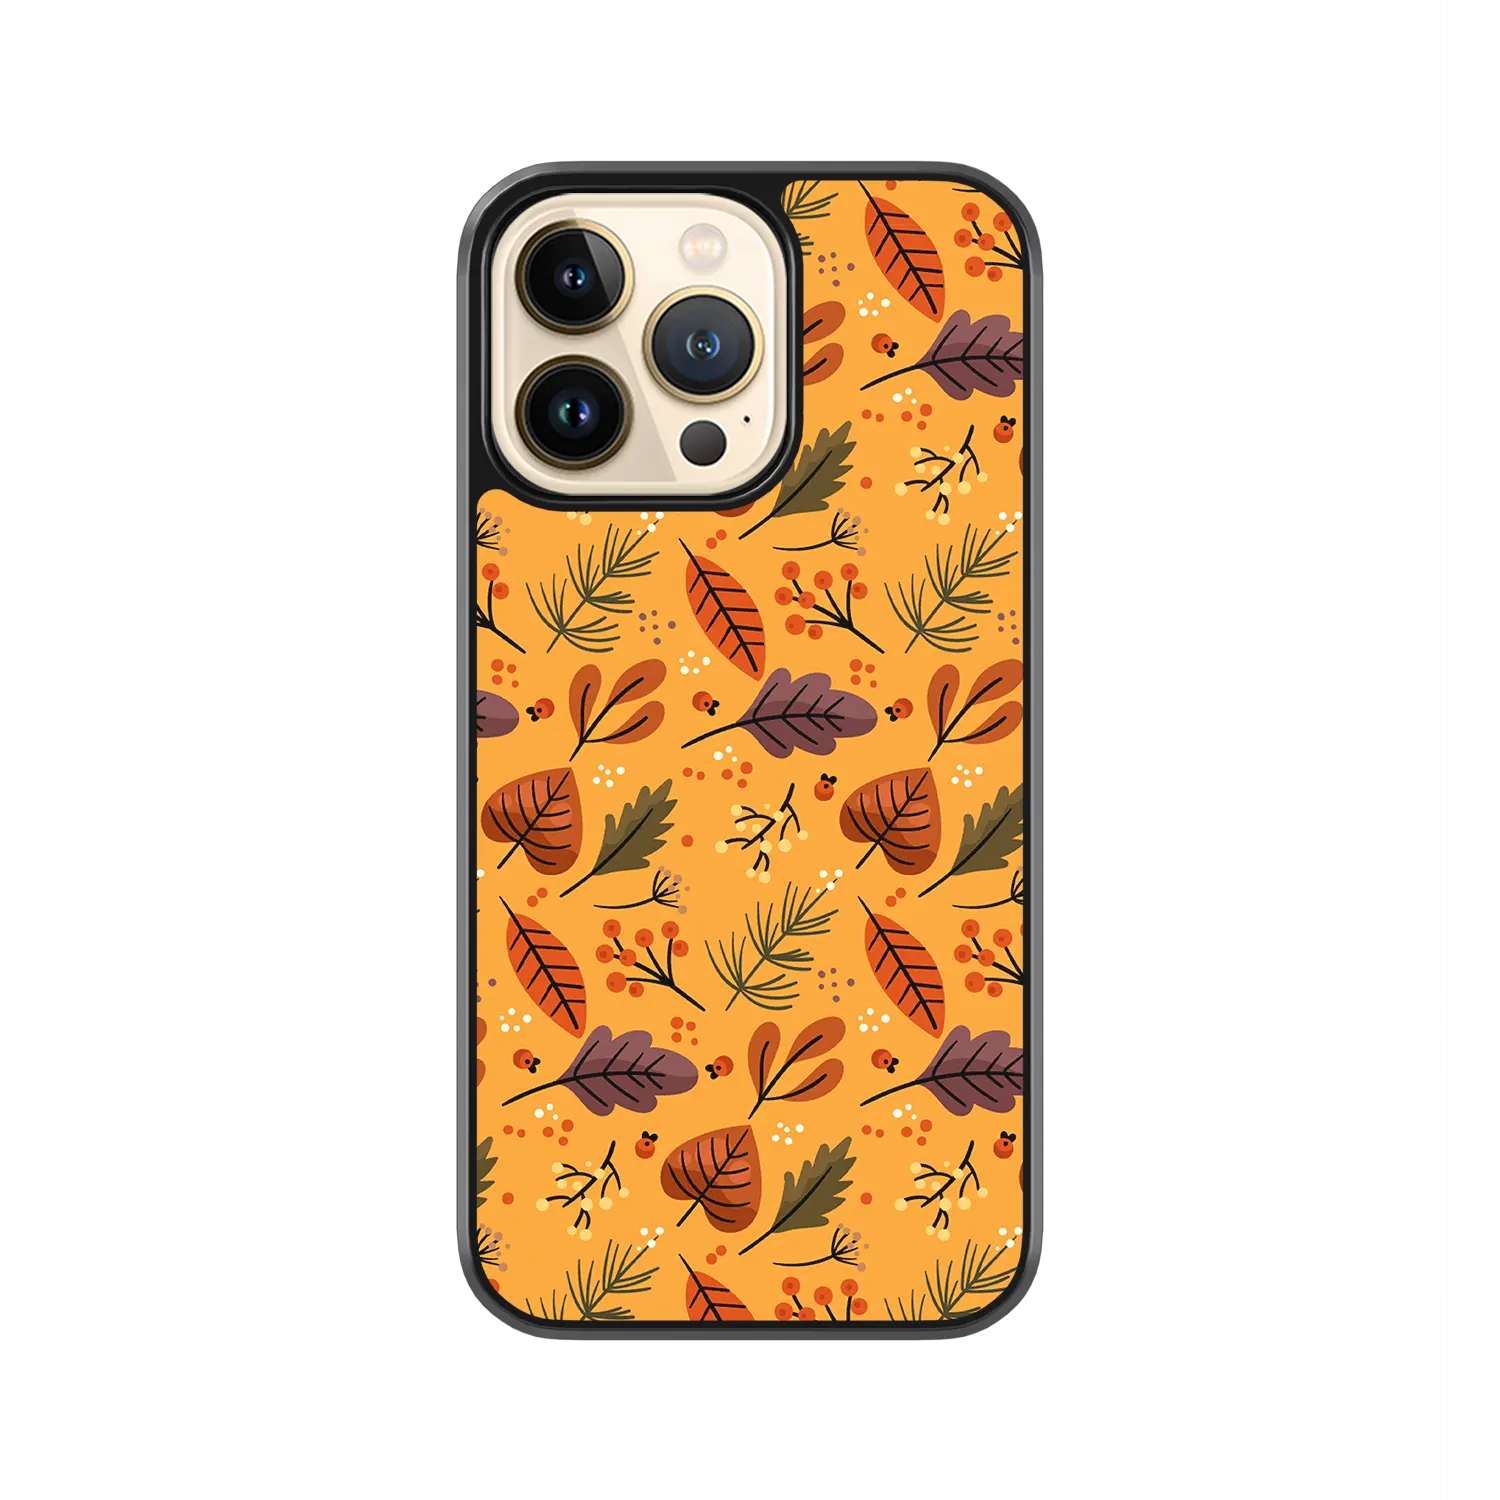 Autumn Orange iPhone 11 Pro Case